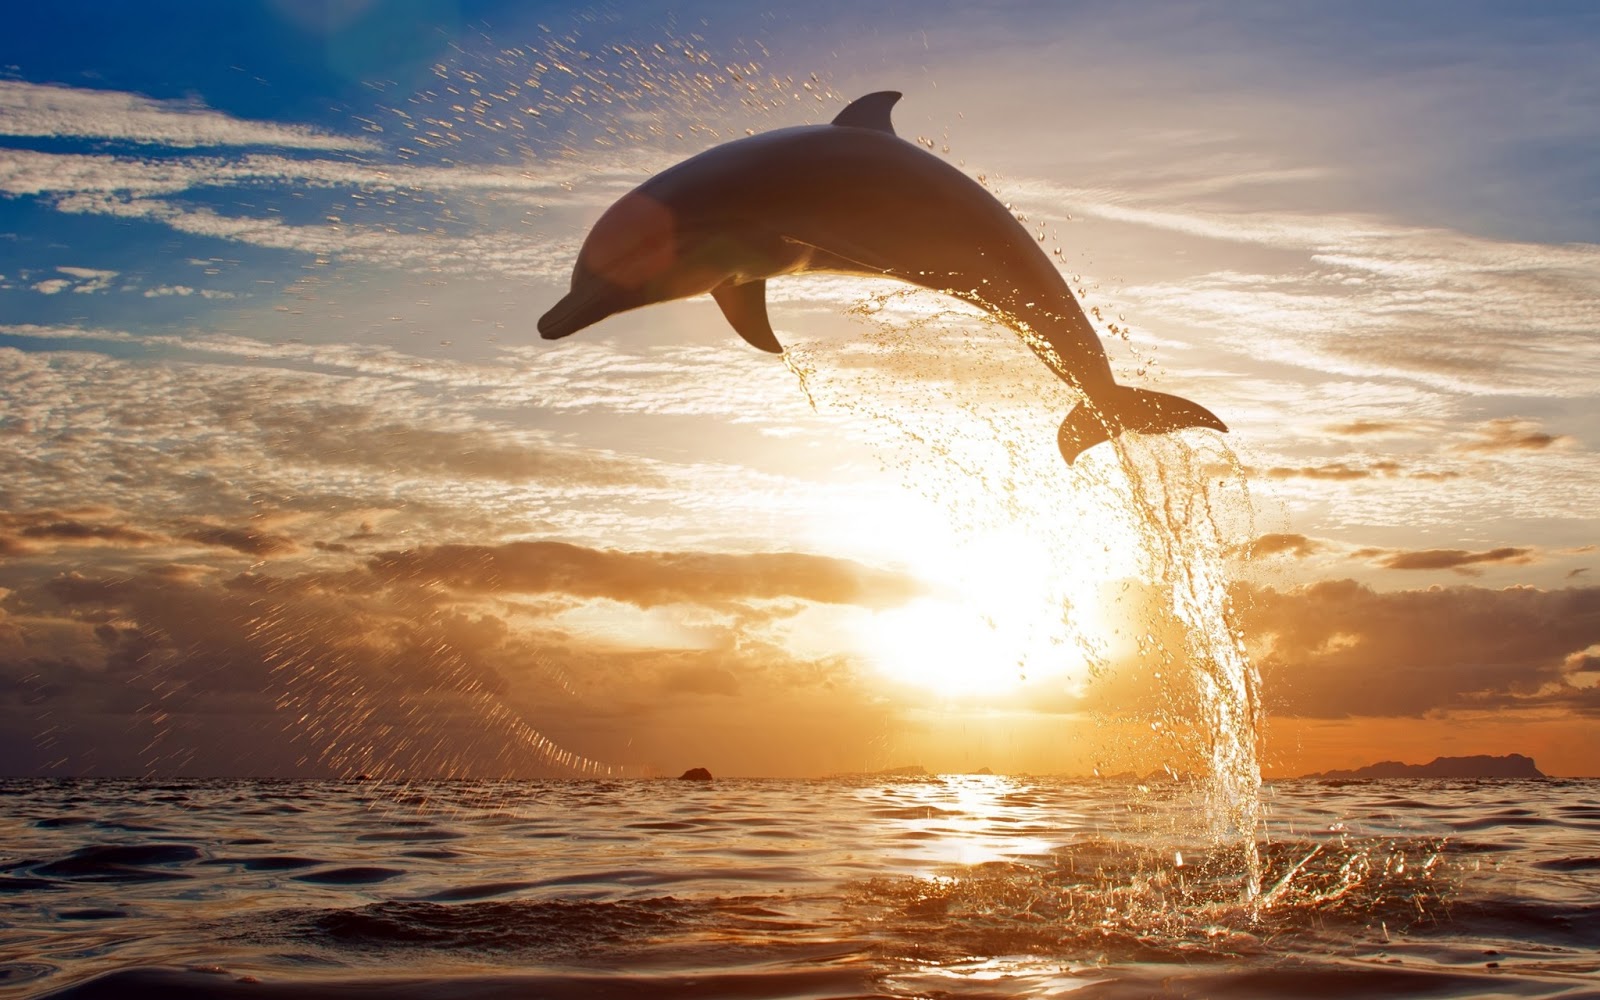 Κινητοποίηση για τη σωτηρία δελφινιού που βγήκε σε παραλία στο νομό Ηλείας (φωτό, βίντεο)